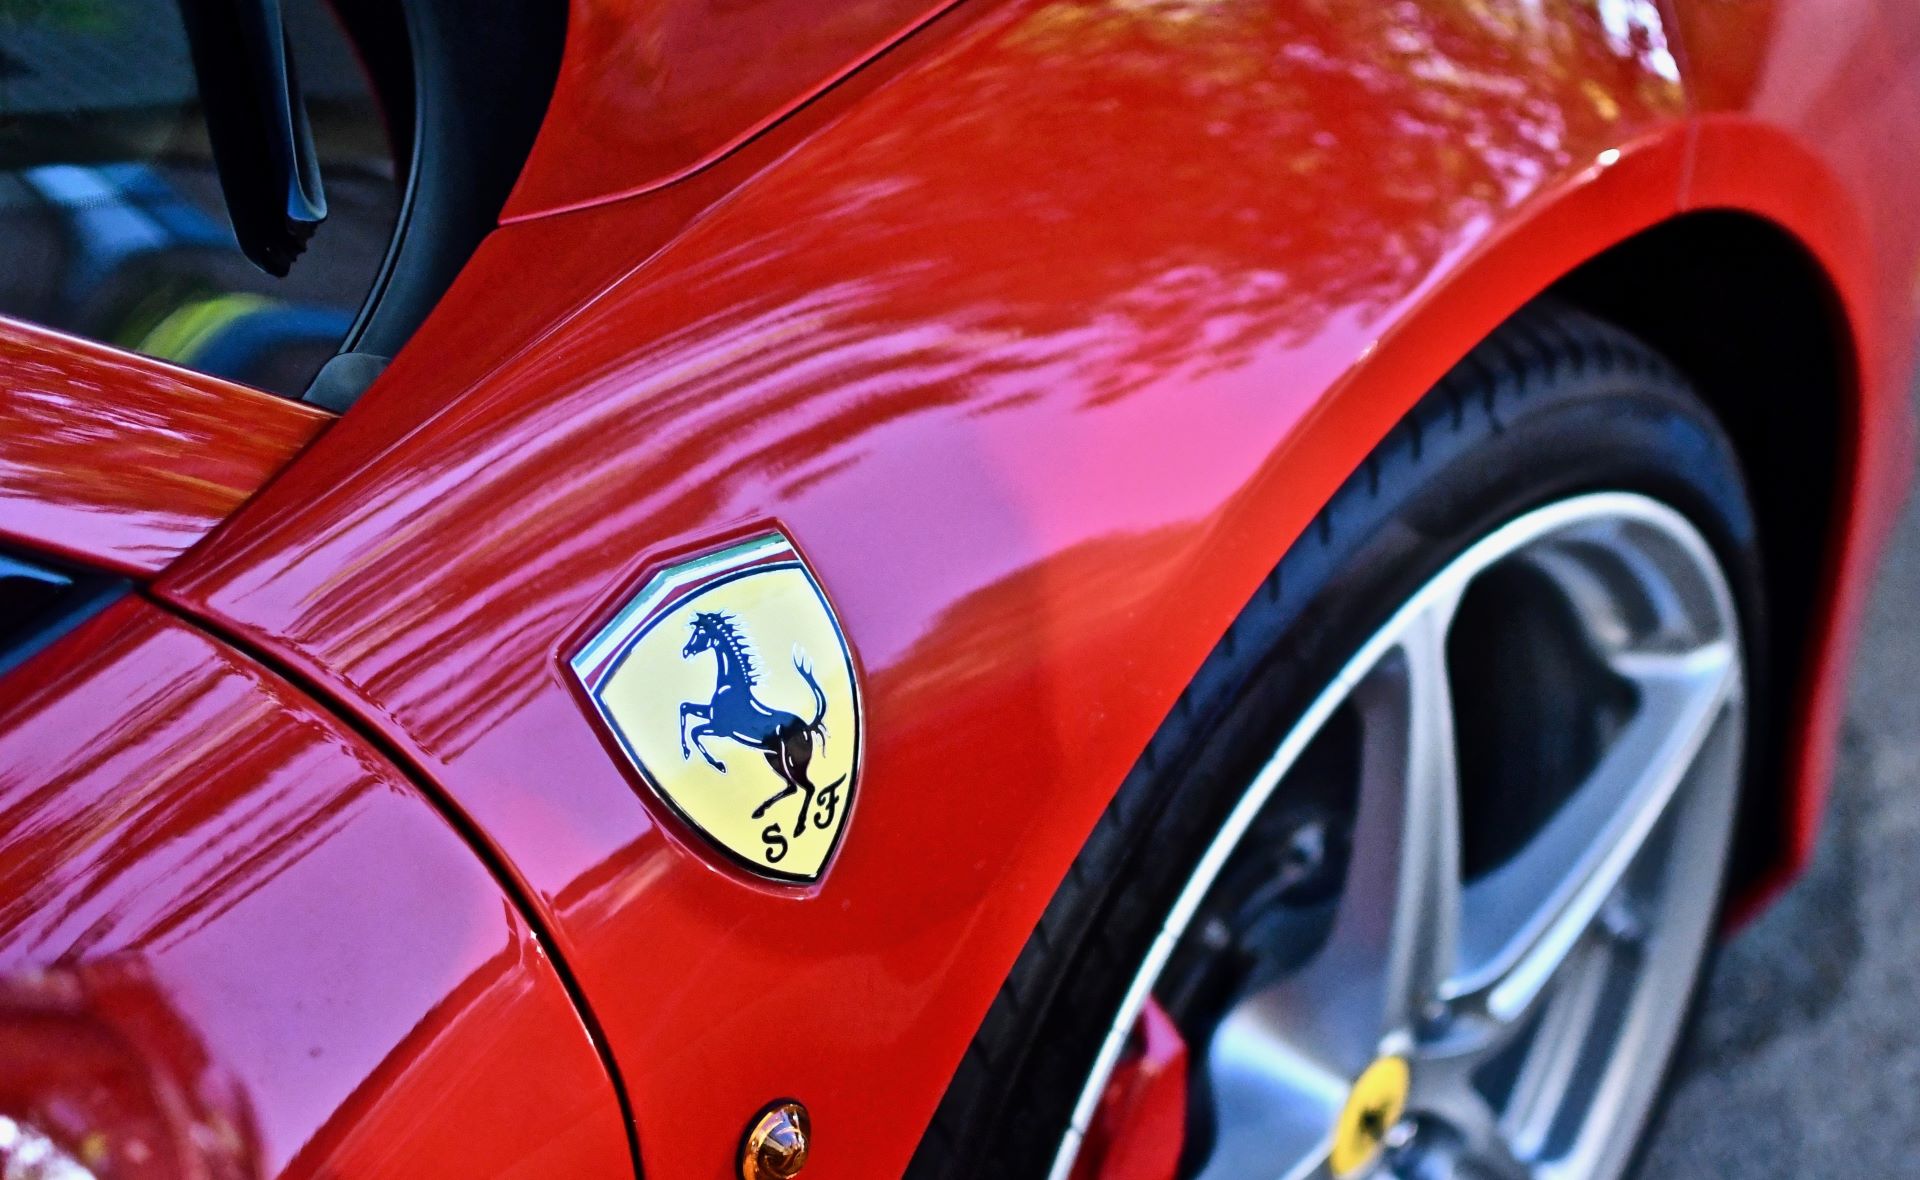 Ferrari adopta la energía limpia en más de un sentido